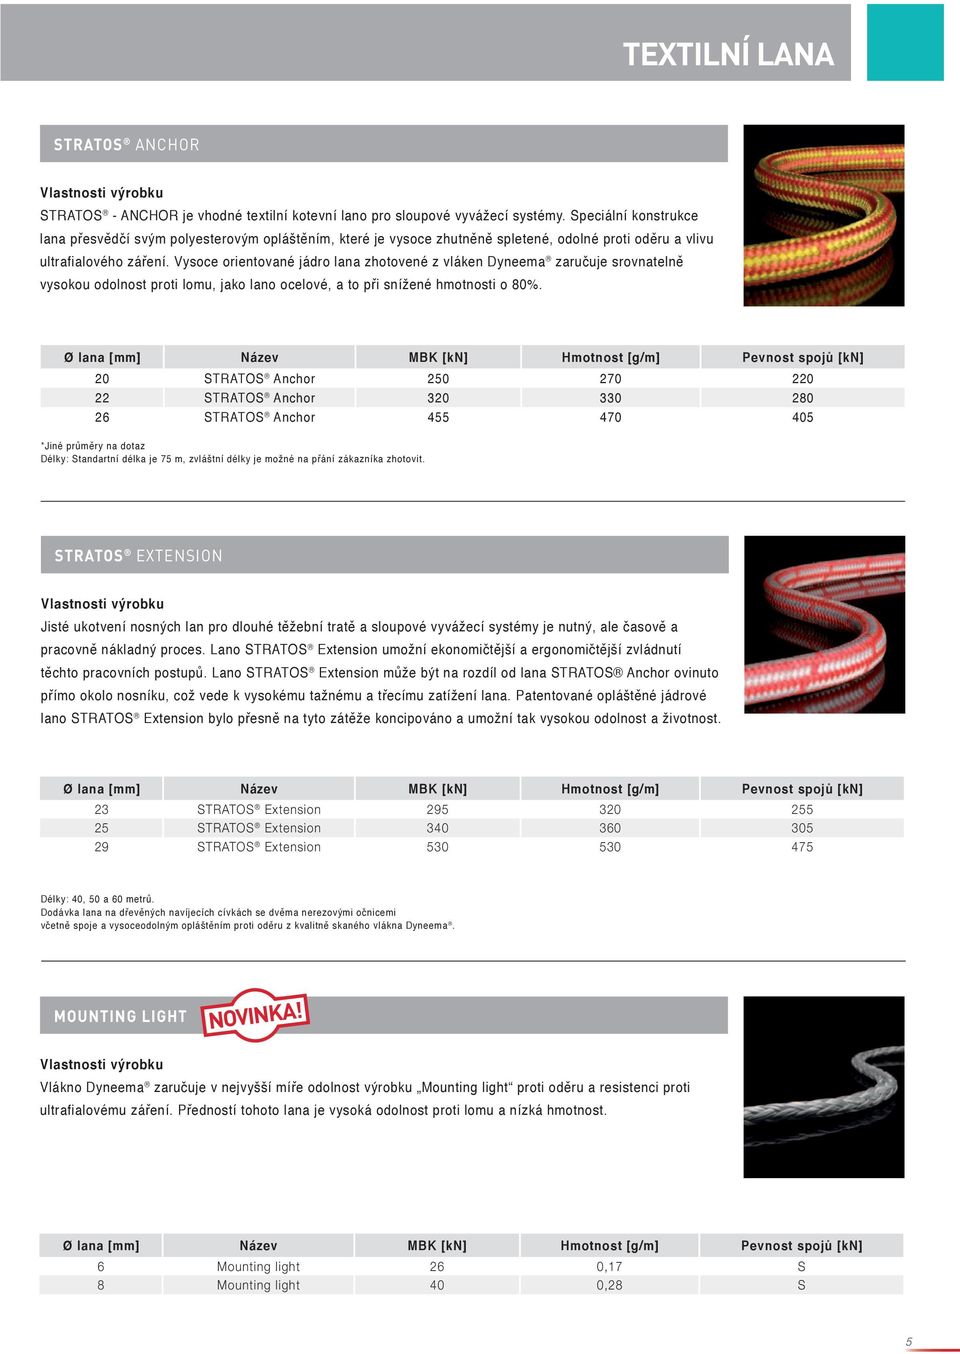 Vysoce orientované jádro lana zhotovené z vláken Dyneema zaručuje srovnatelně vysokou odolnost proti lomu, jako lano ocelové, a to při snížené hmotnosti o 80%.